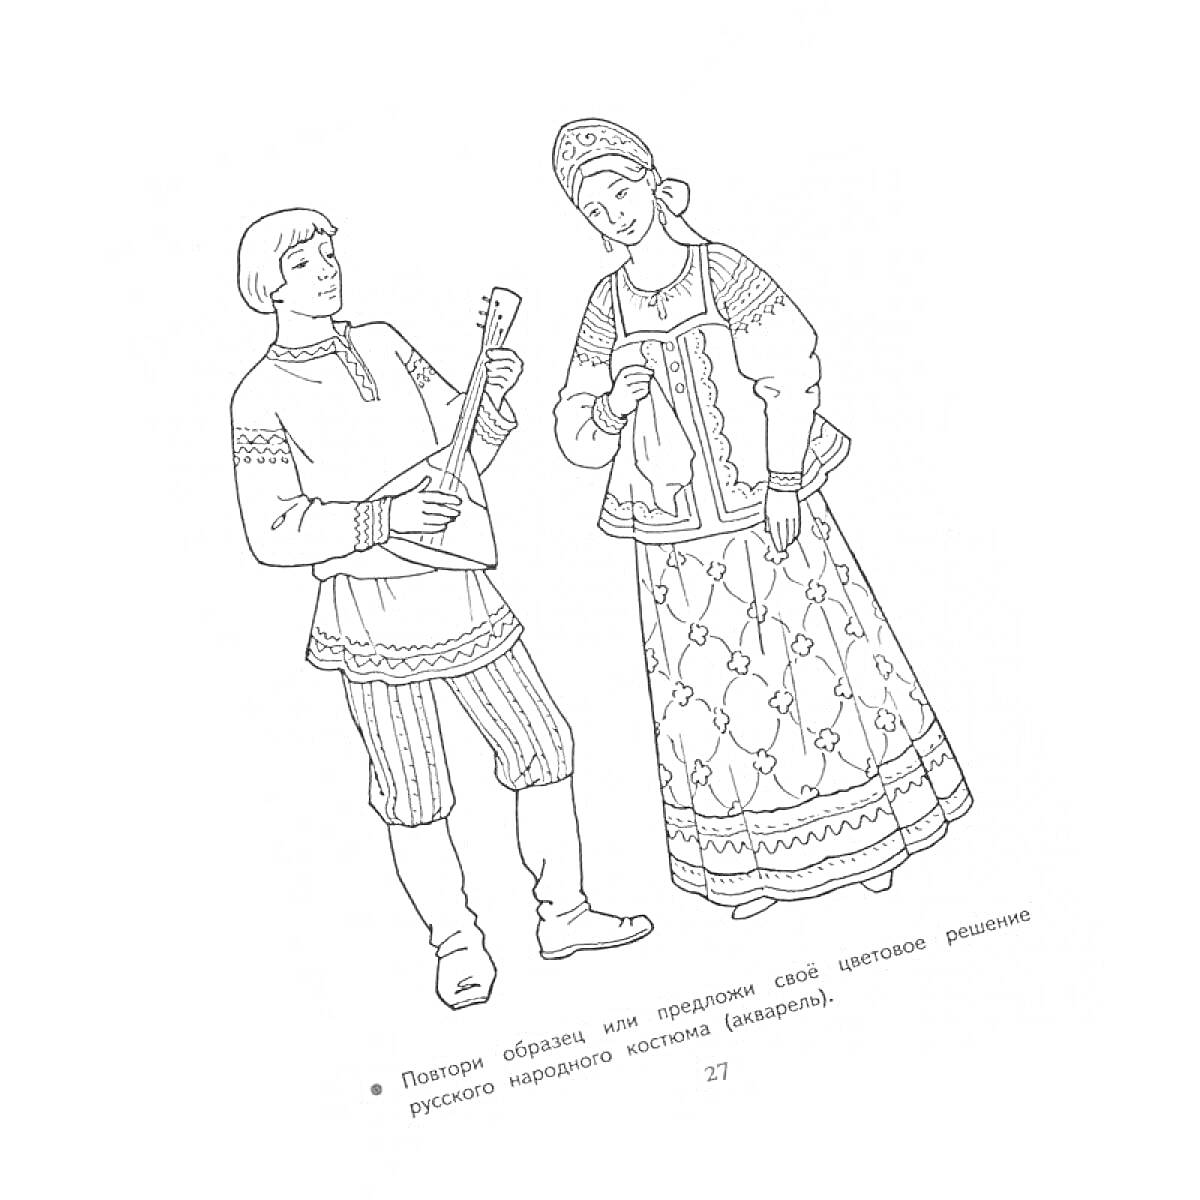 Раскраска Мужчина и женщина в русском народном костюме. На мужчине надета косоворотка, полосатые штаны, сапоги, он играет на балалайке. На женщине надет кокошник, рубаха, сарафан, пояс и рукава с вышивкой.